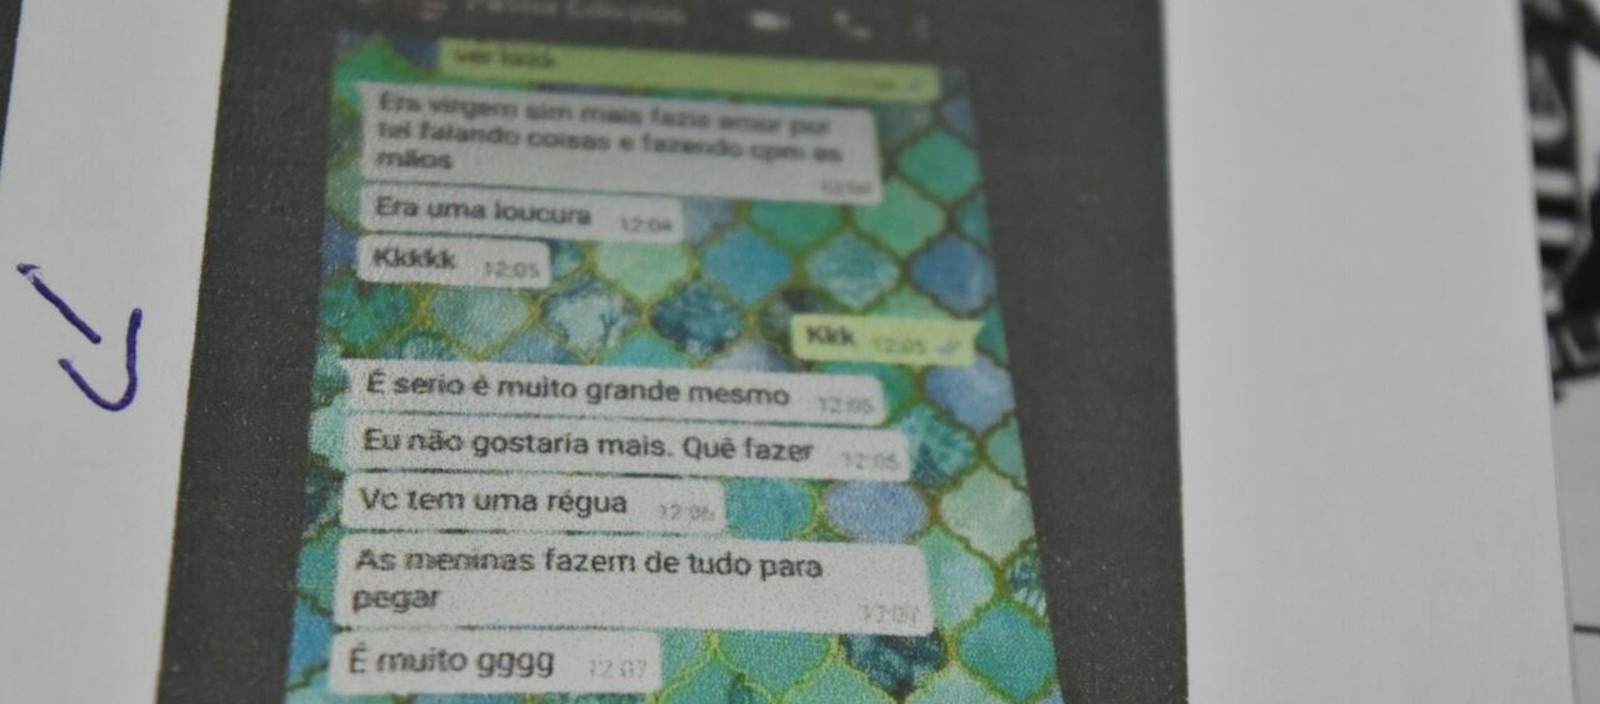 Adolescente entregaram as mensagens para a polícia (Foto: Divulgação/Polícia Civil)
